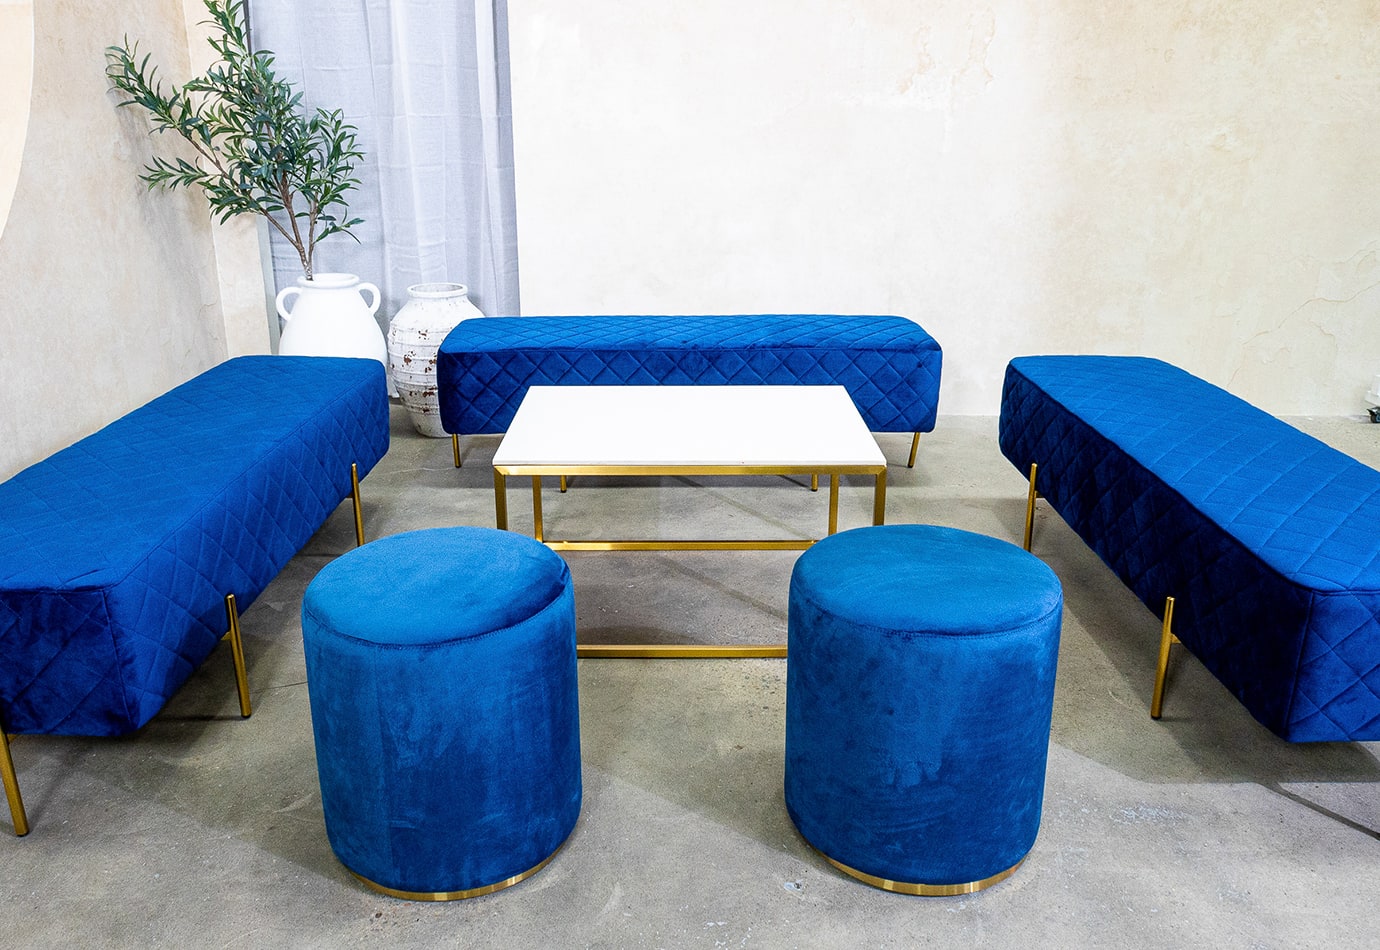 Two velvet navy blue ottoman stools